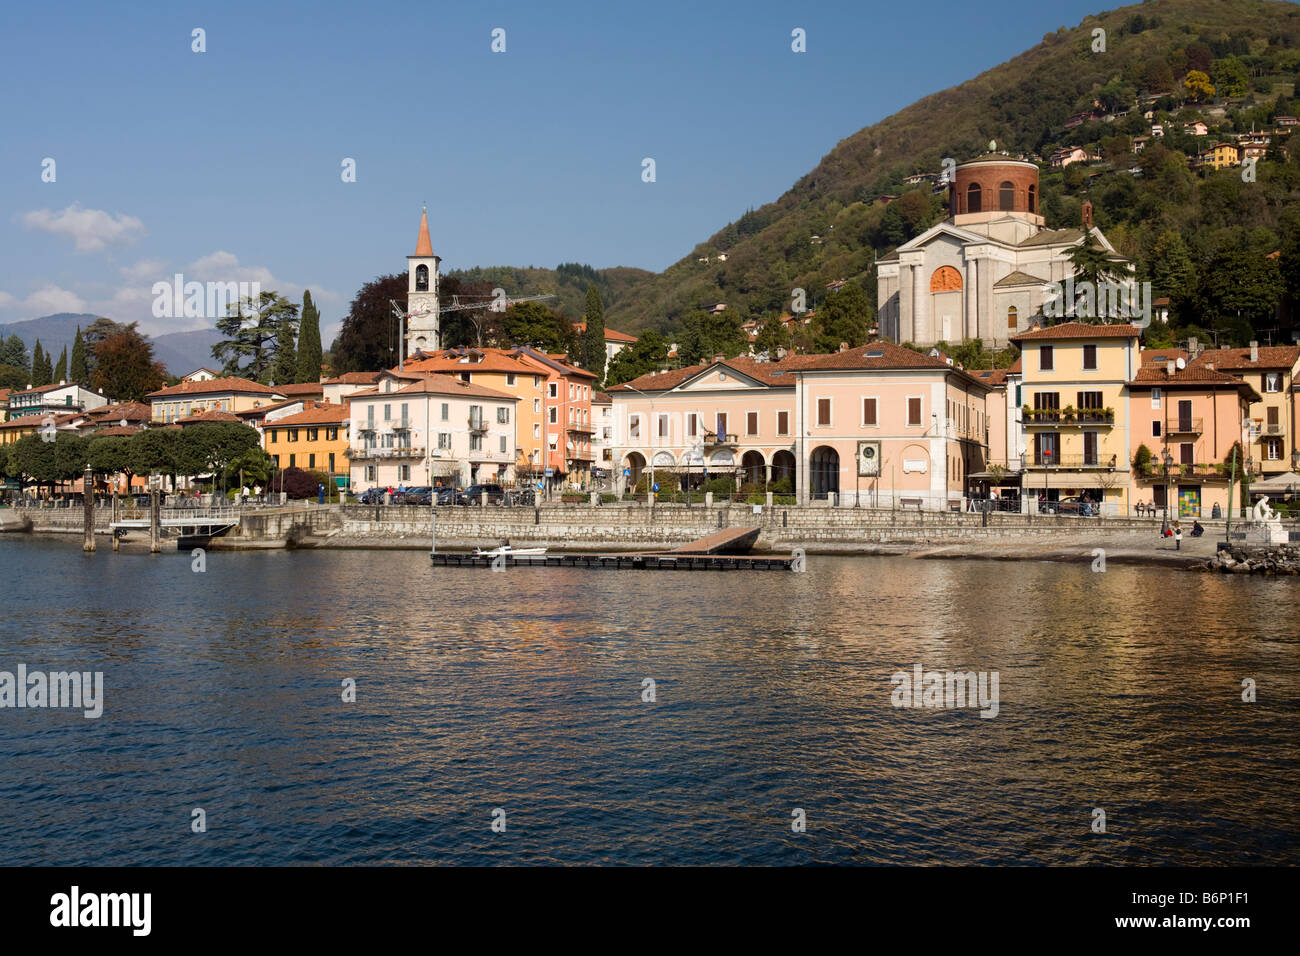 Laveno Mombello, Lake Maggiore, Italy Stock Photo